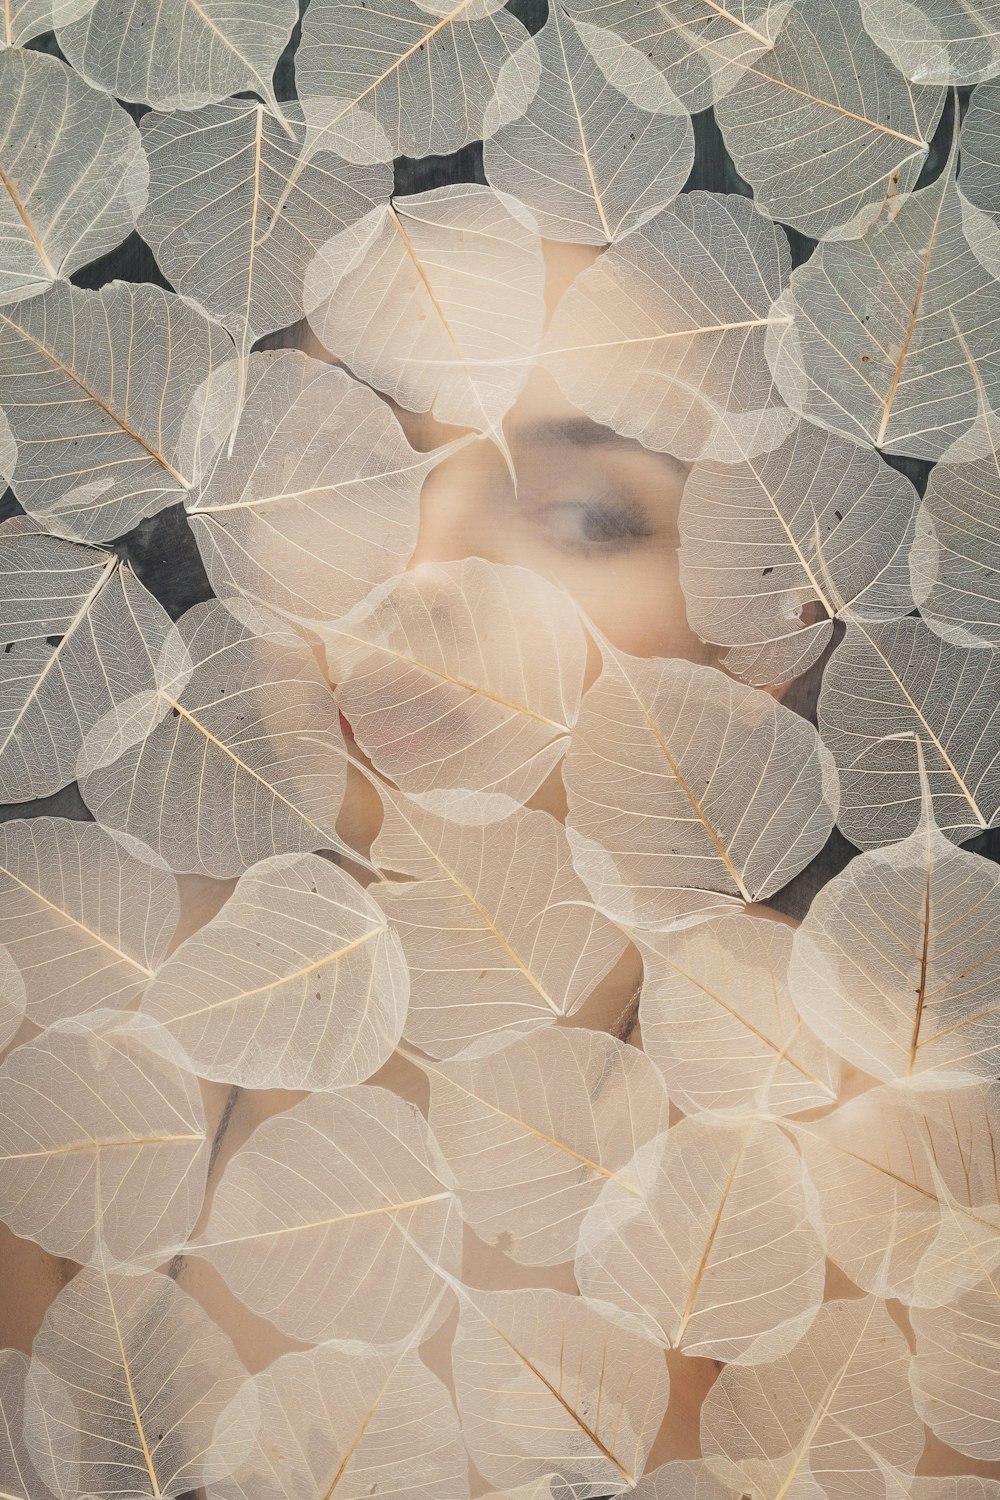 le visage d’une femme entouré de feuilles blanches